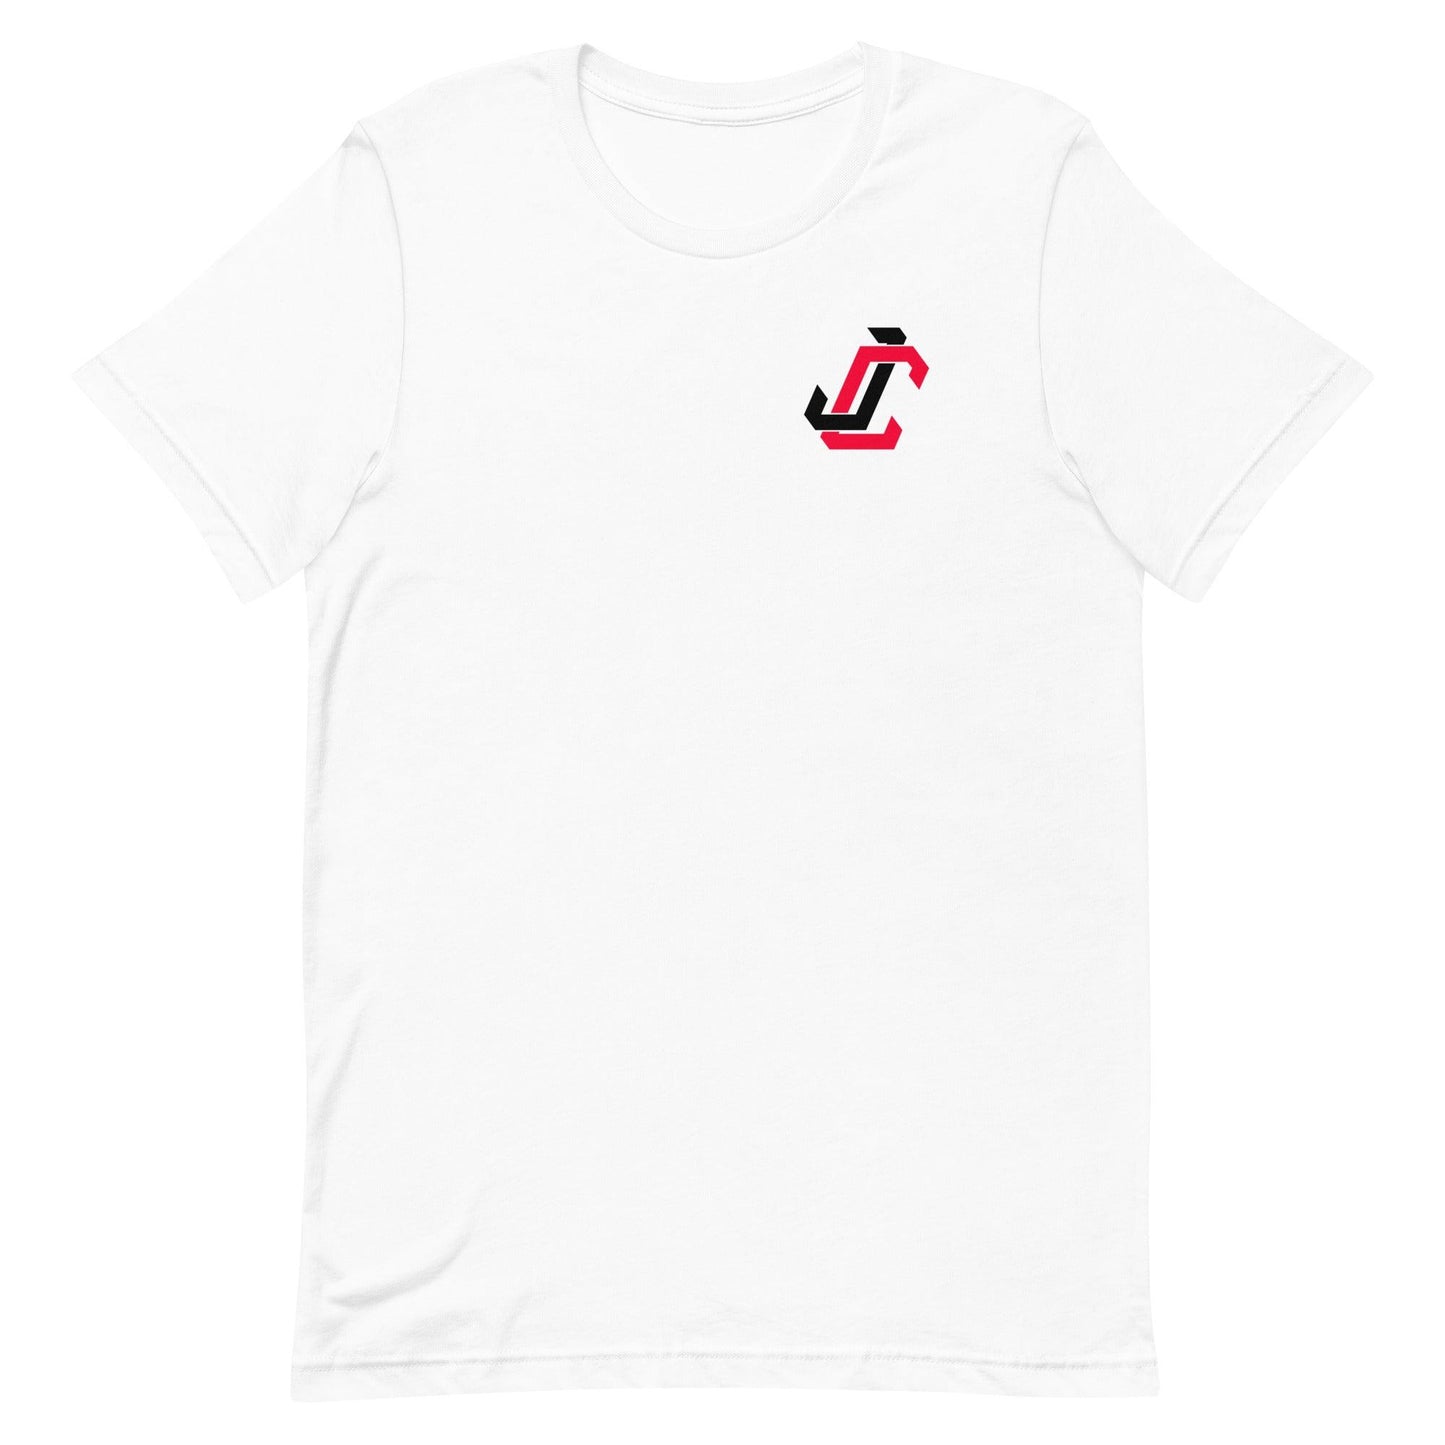 Jack Clark "JC" t-shirt - Fan Arch